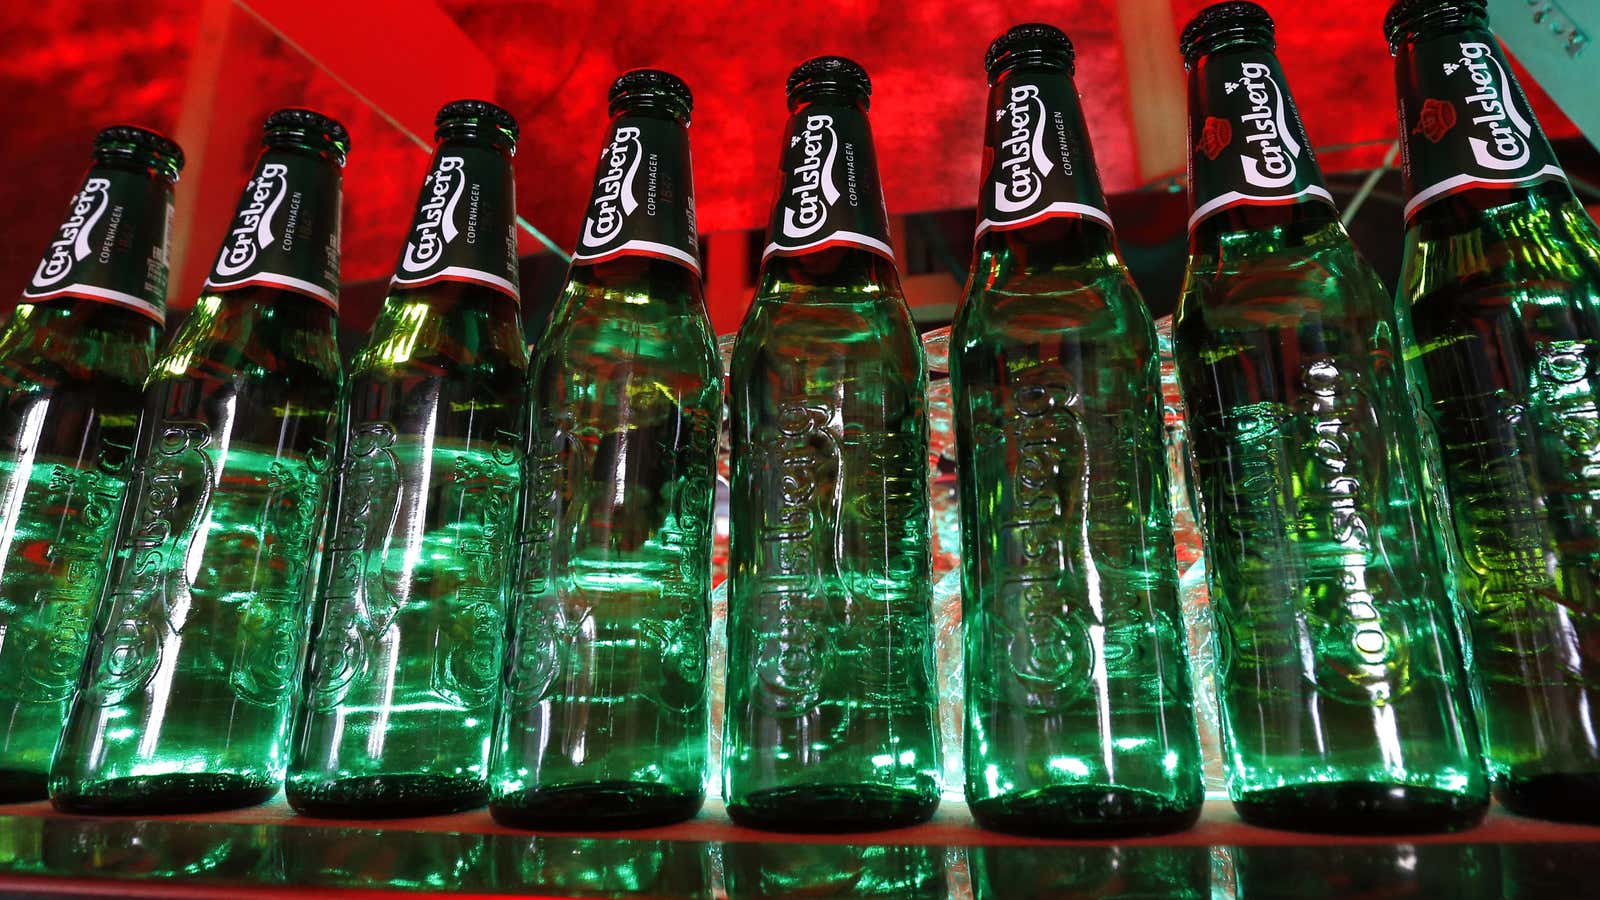 Greener bottles